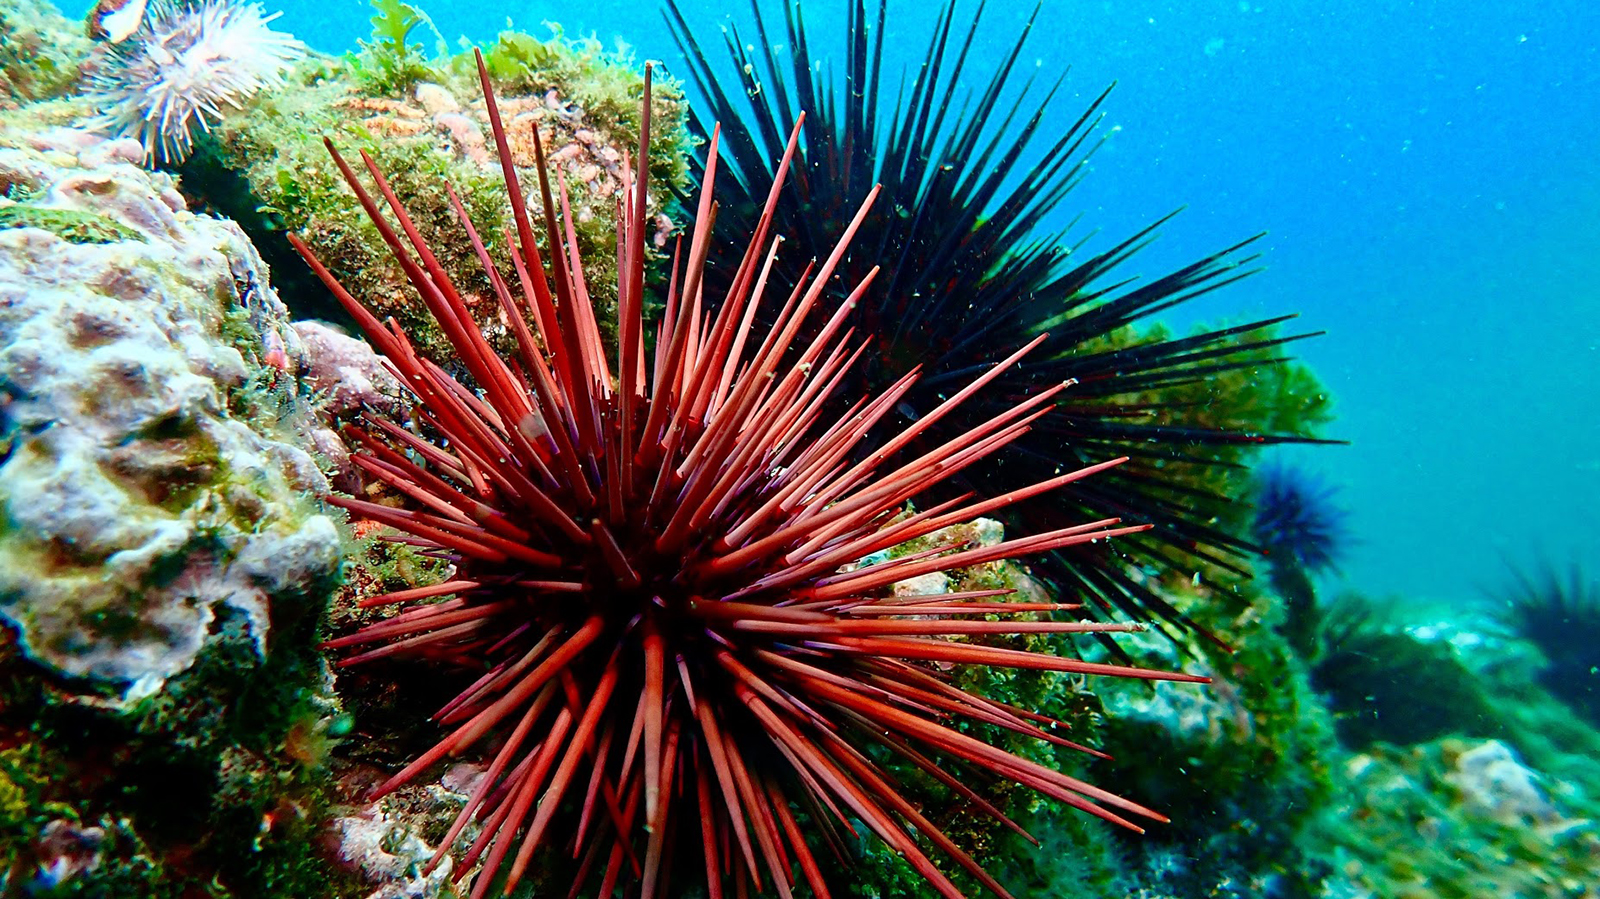 Red sea urchin